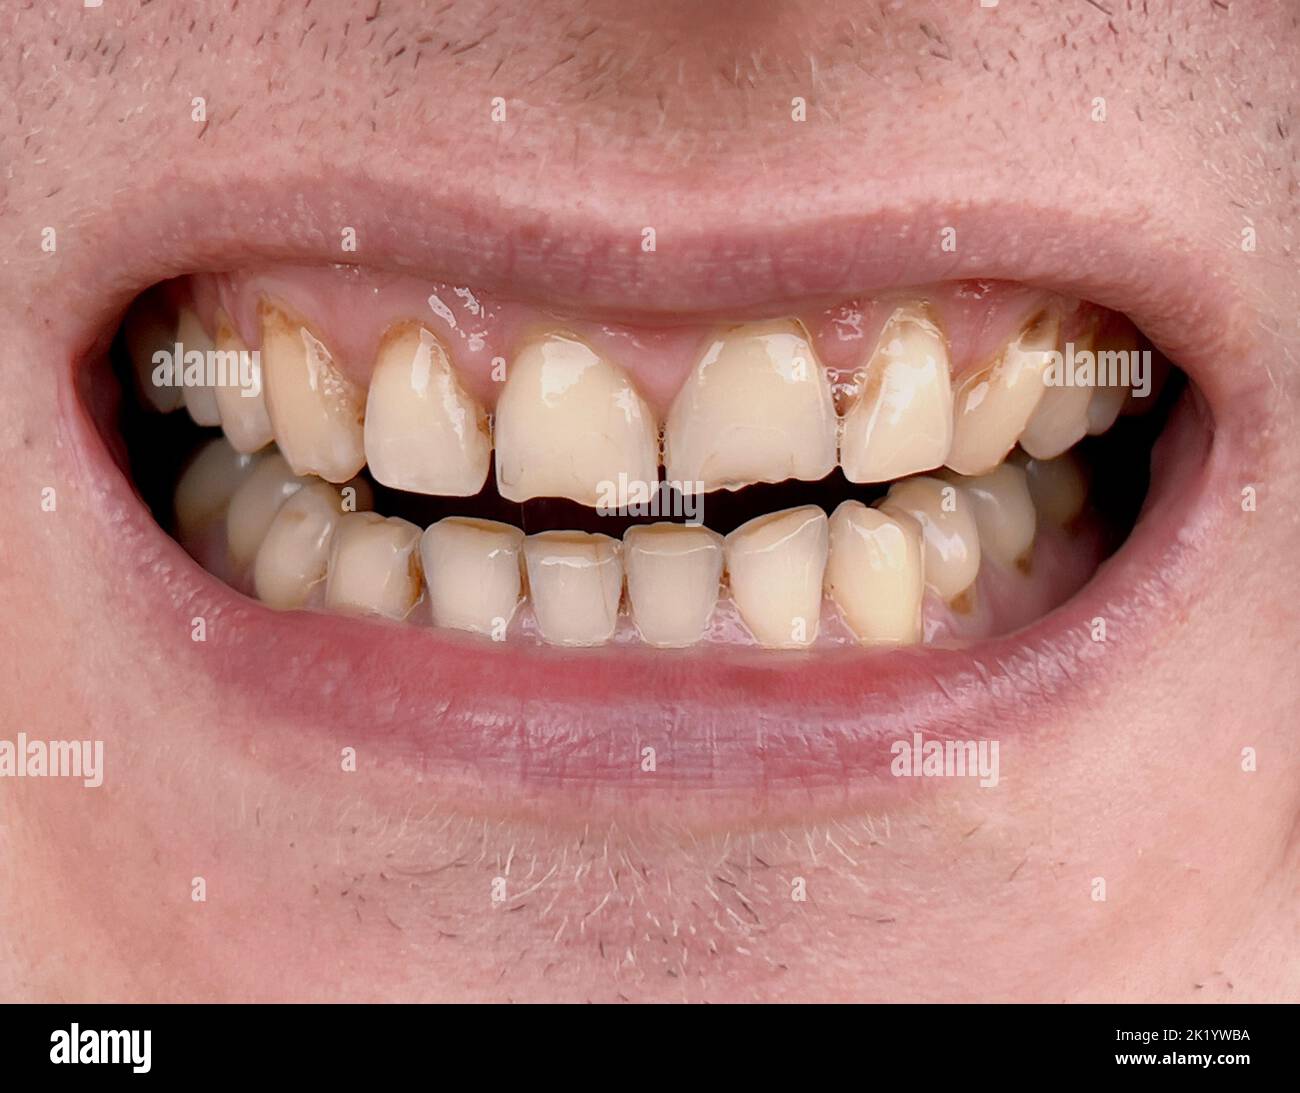 Lächelnder Mund eines Mannes mit schiefen gelben Zähnen aus der Nähe. Ungesunde abgenutzte Zähne, die in der Zahnmedizin behandelt werden müssen. Bruxismus Stockfoto